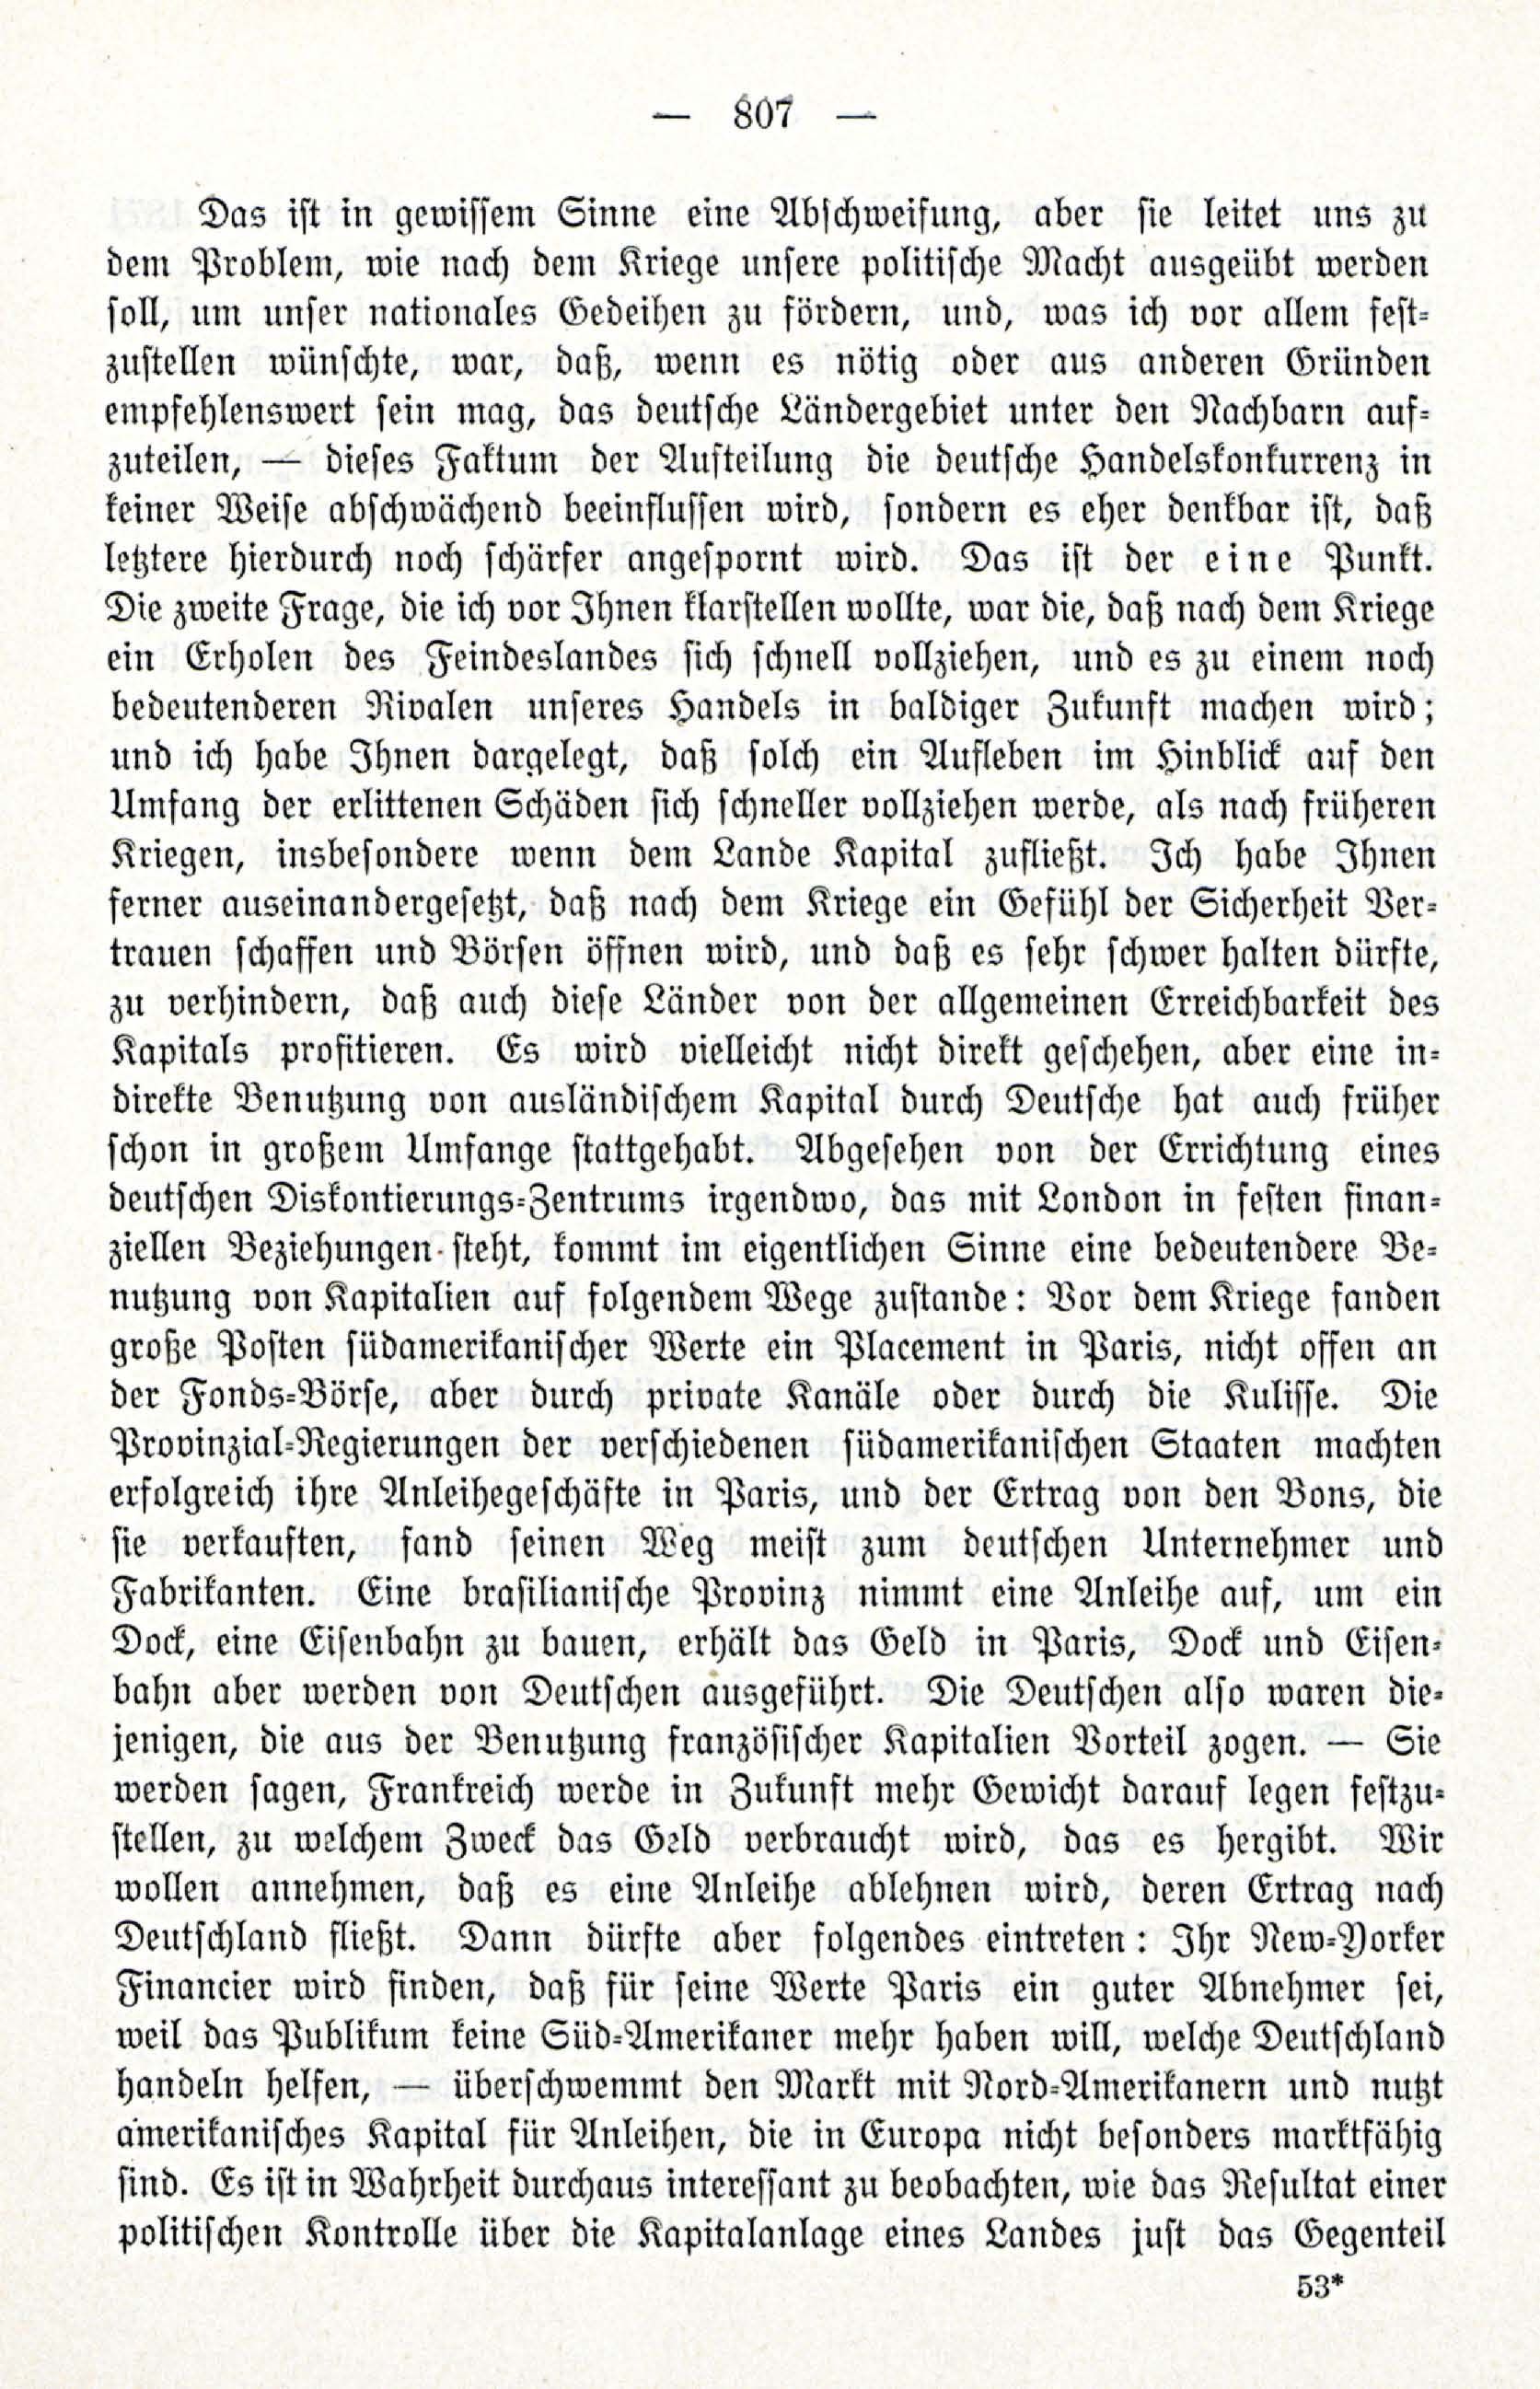 Deutsche Monatsschrift für Russland [3/12] (1914) | 23. (807) Main body of text